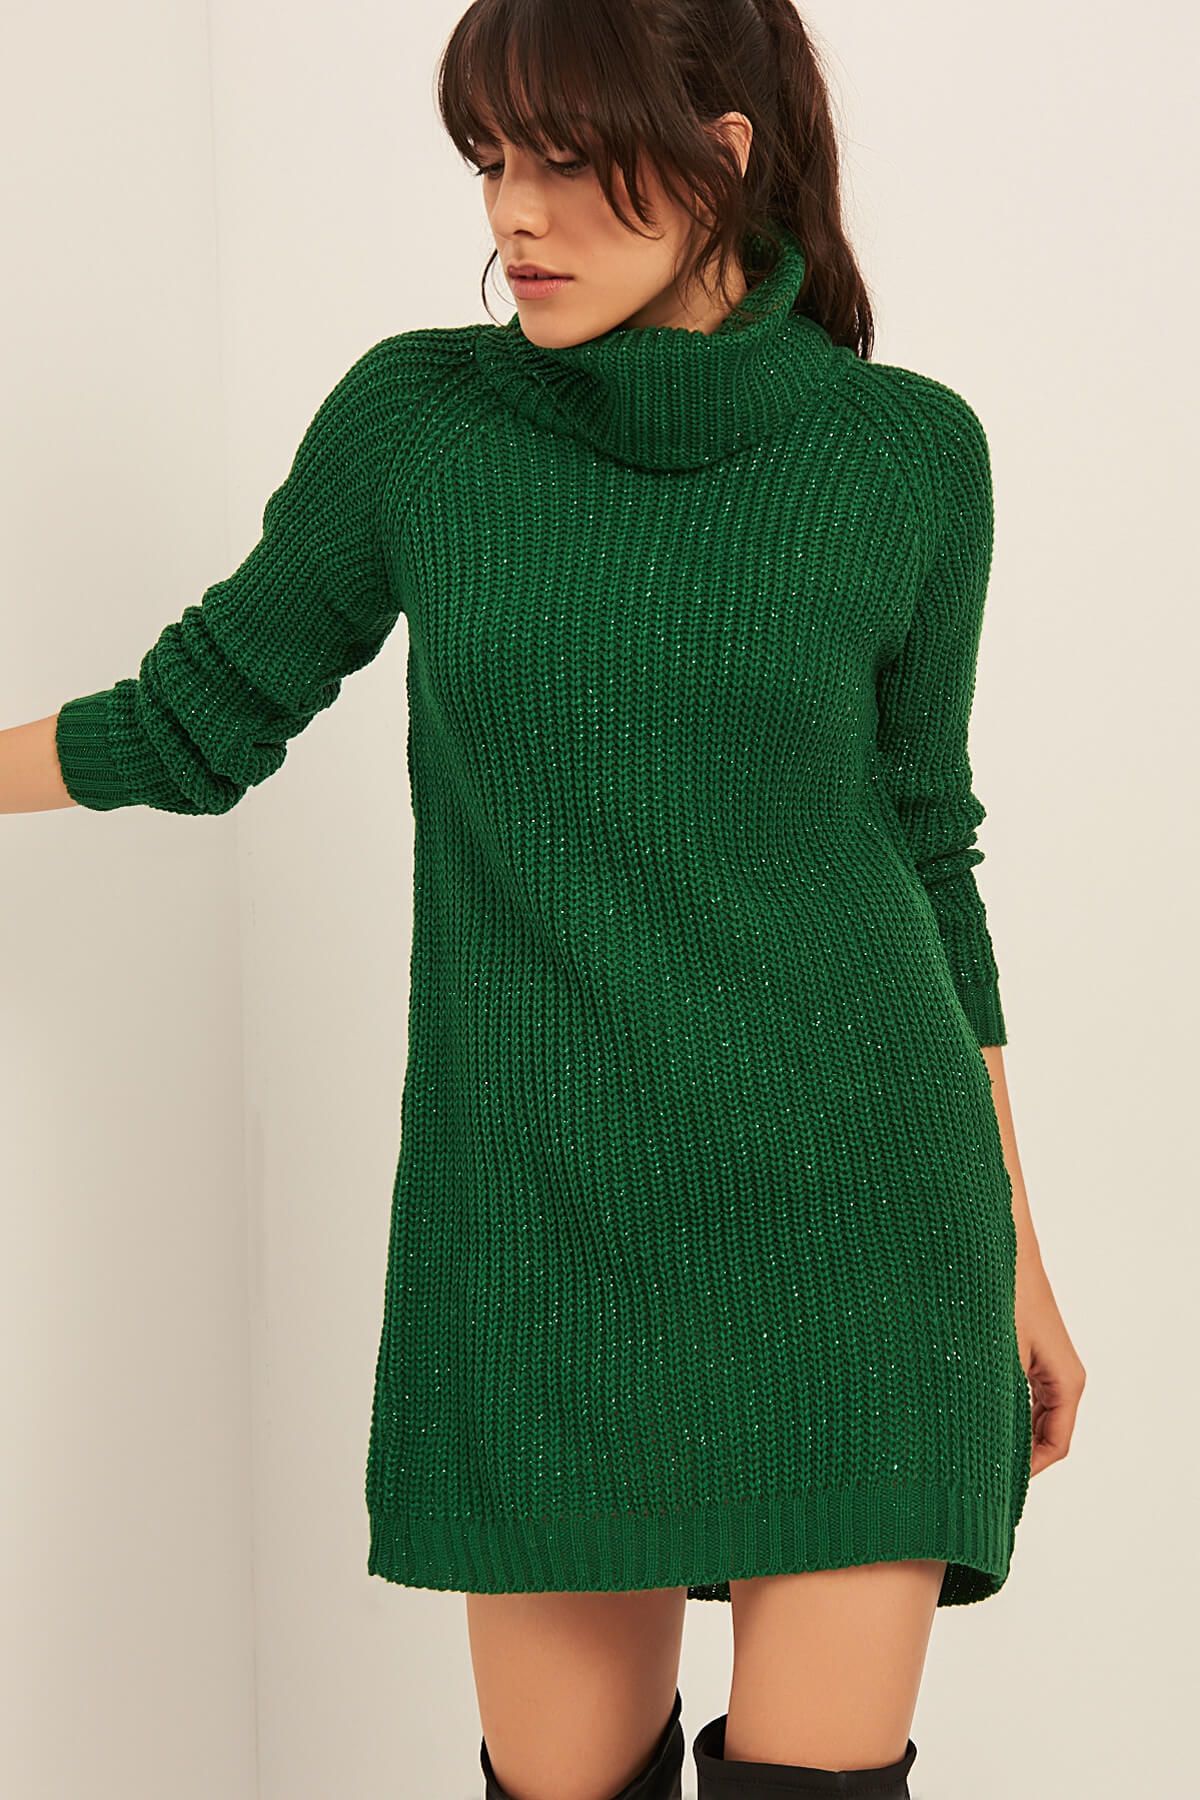 Olalook Kadın Yeşil Simli Balıkçı Yaka Tunik Elbise OLA-EL13240